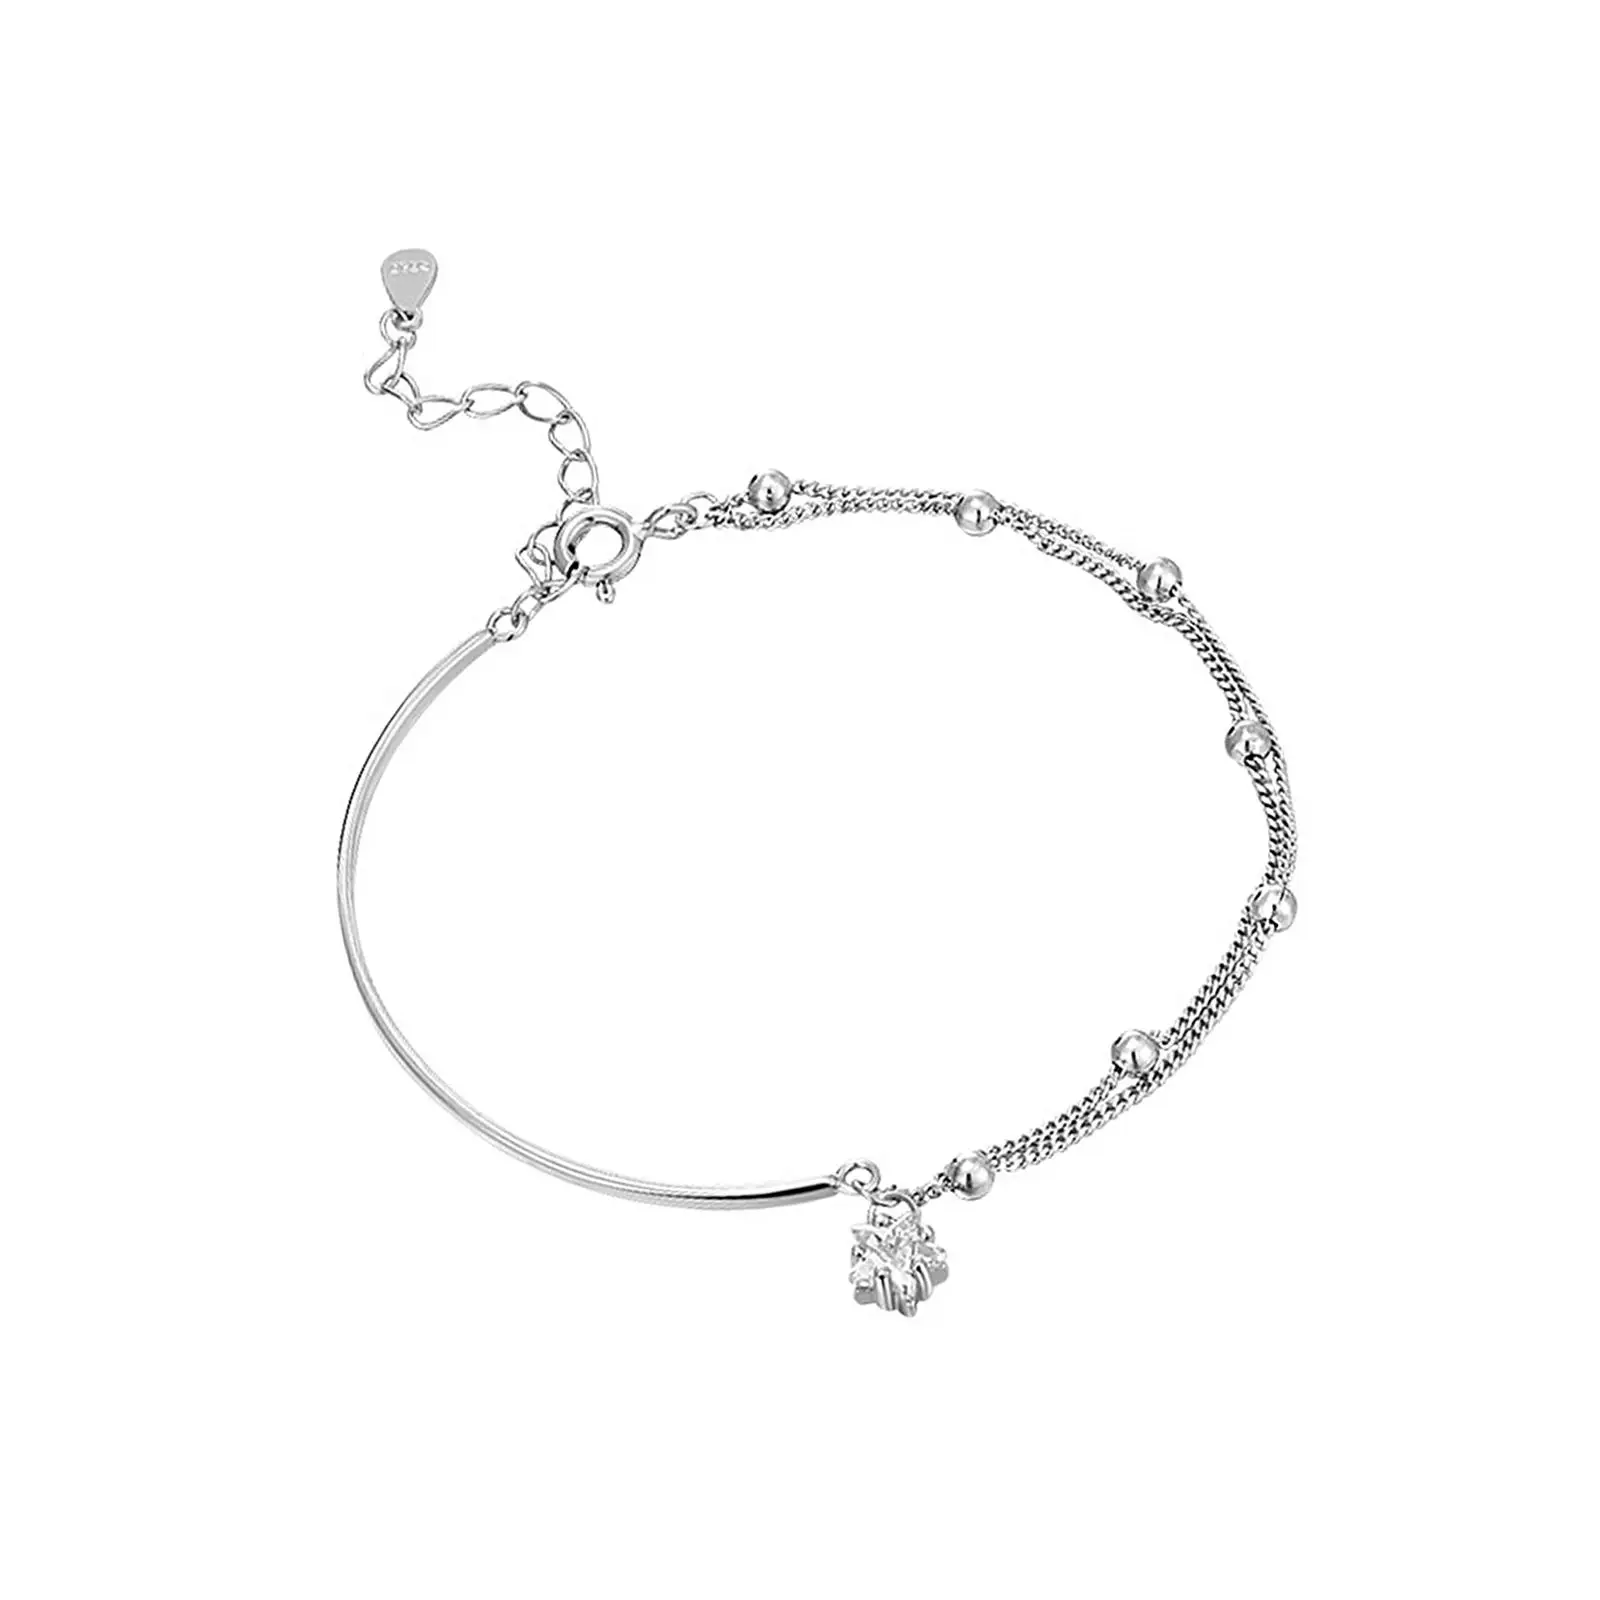 Silver Star Bracelet Accessories Women Bracelet for Lover Girlfriend Wedding